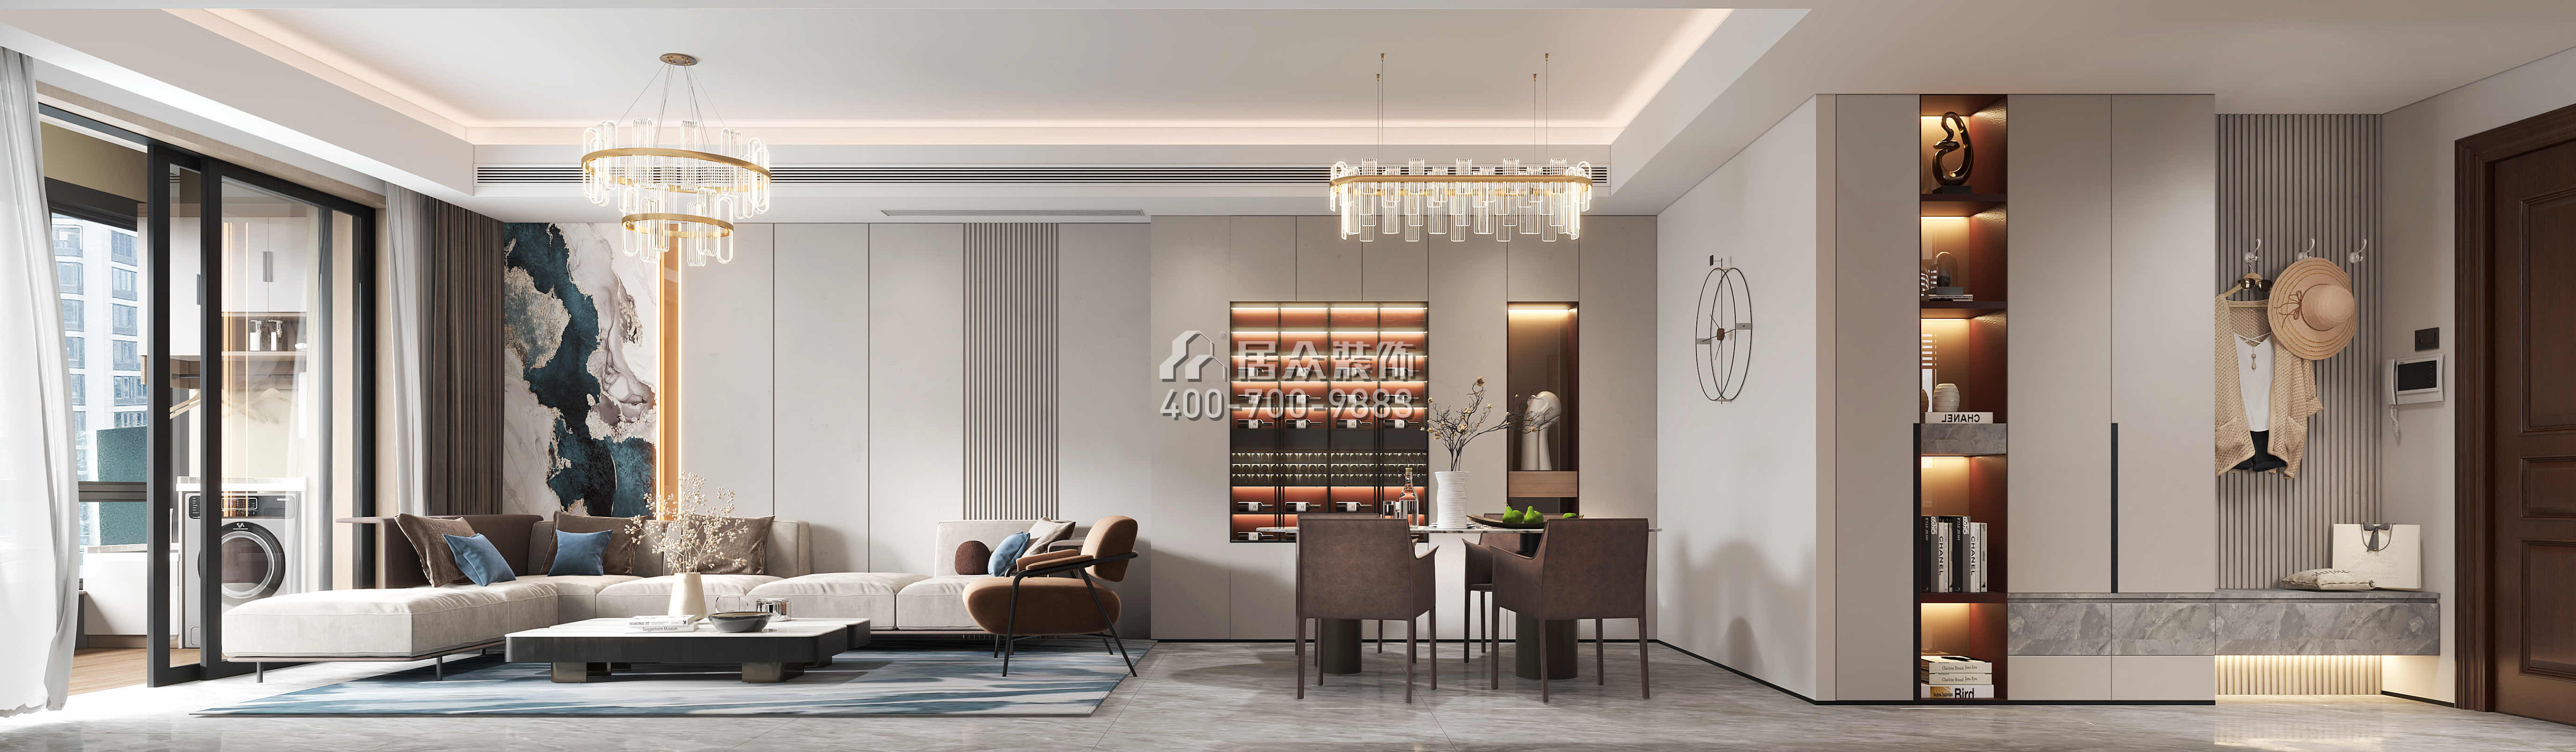 翠湖香山百合苑116平方米現代簡約風格平層戶型客廳裝修效果圖